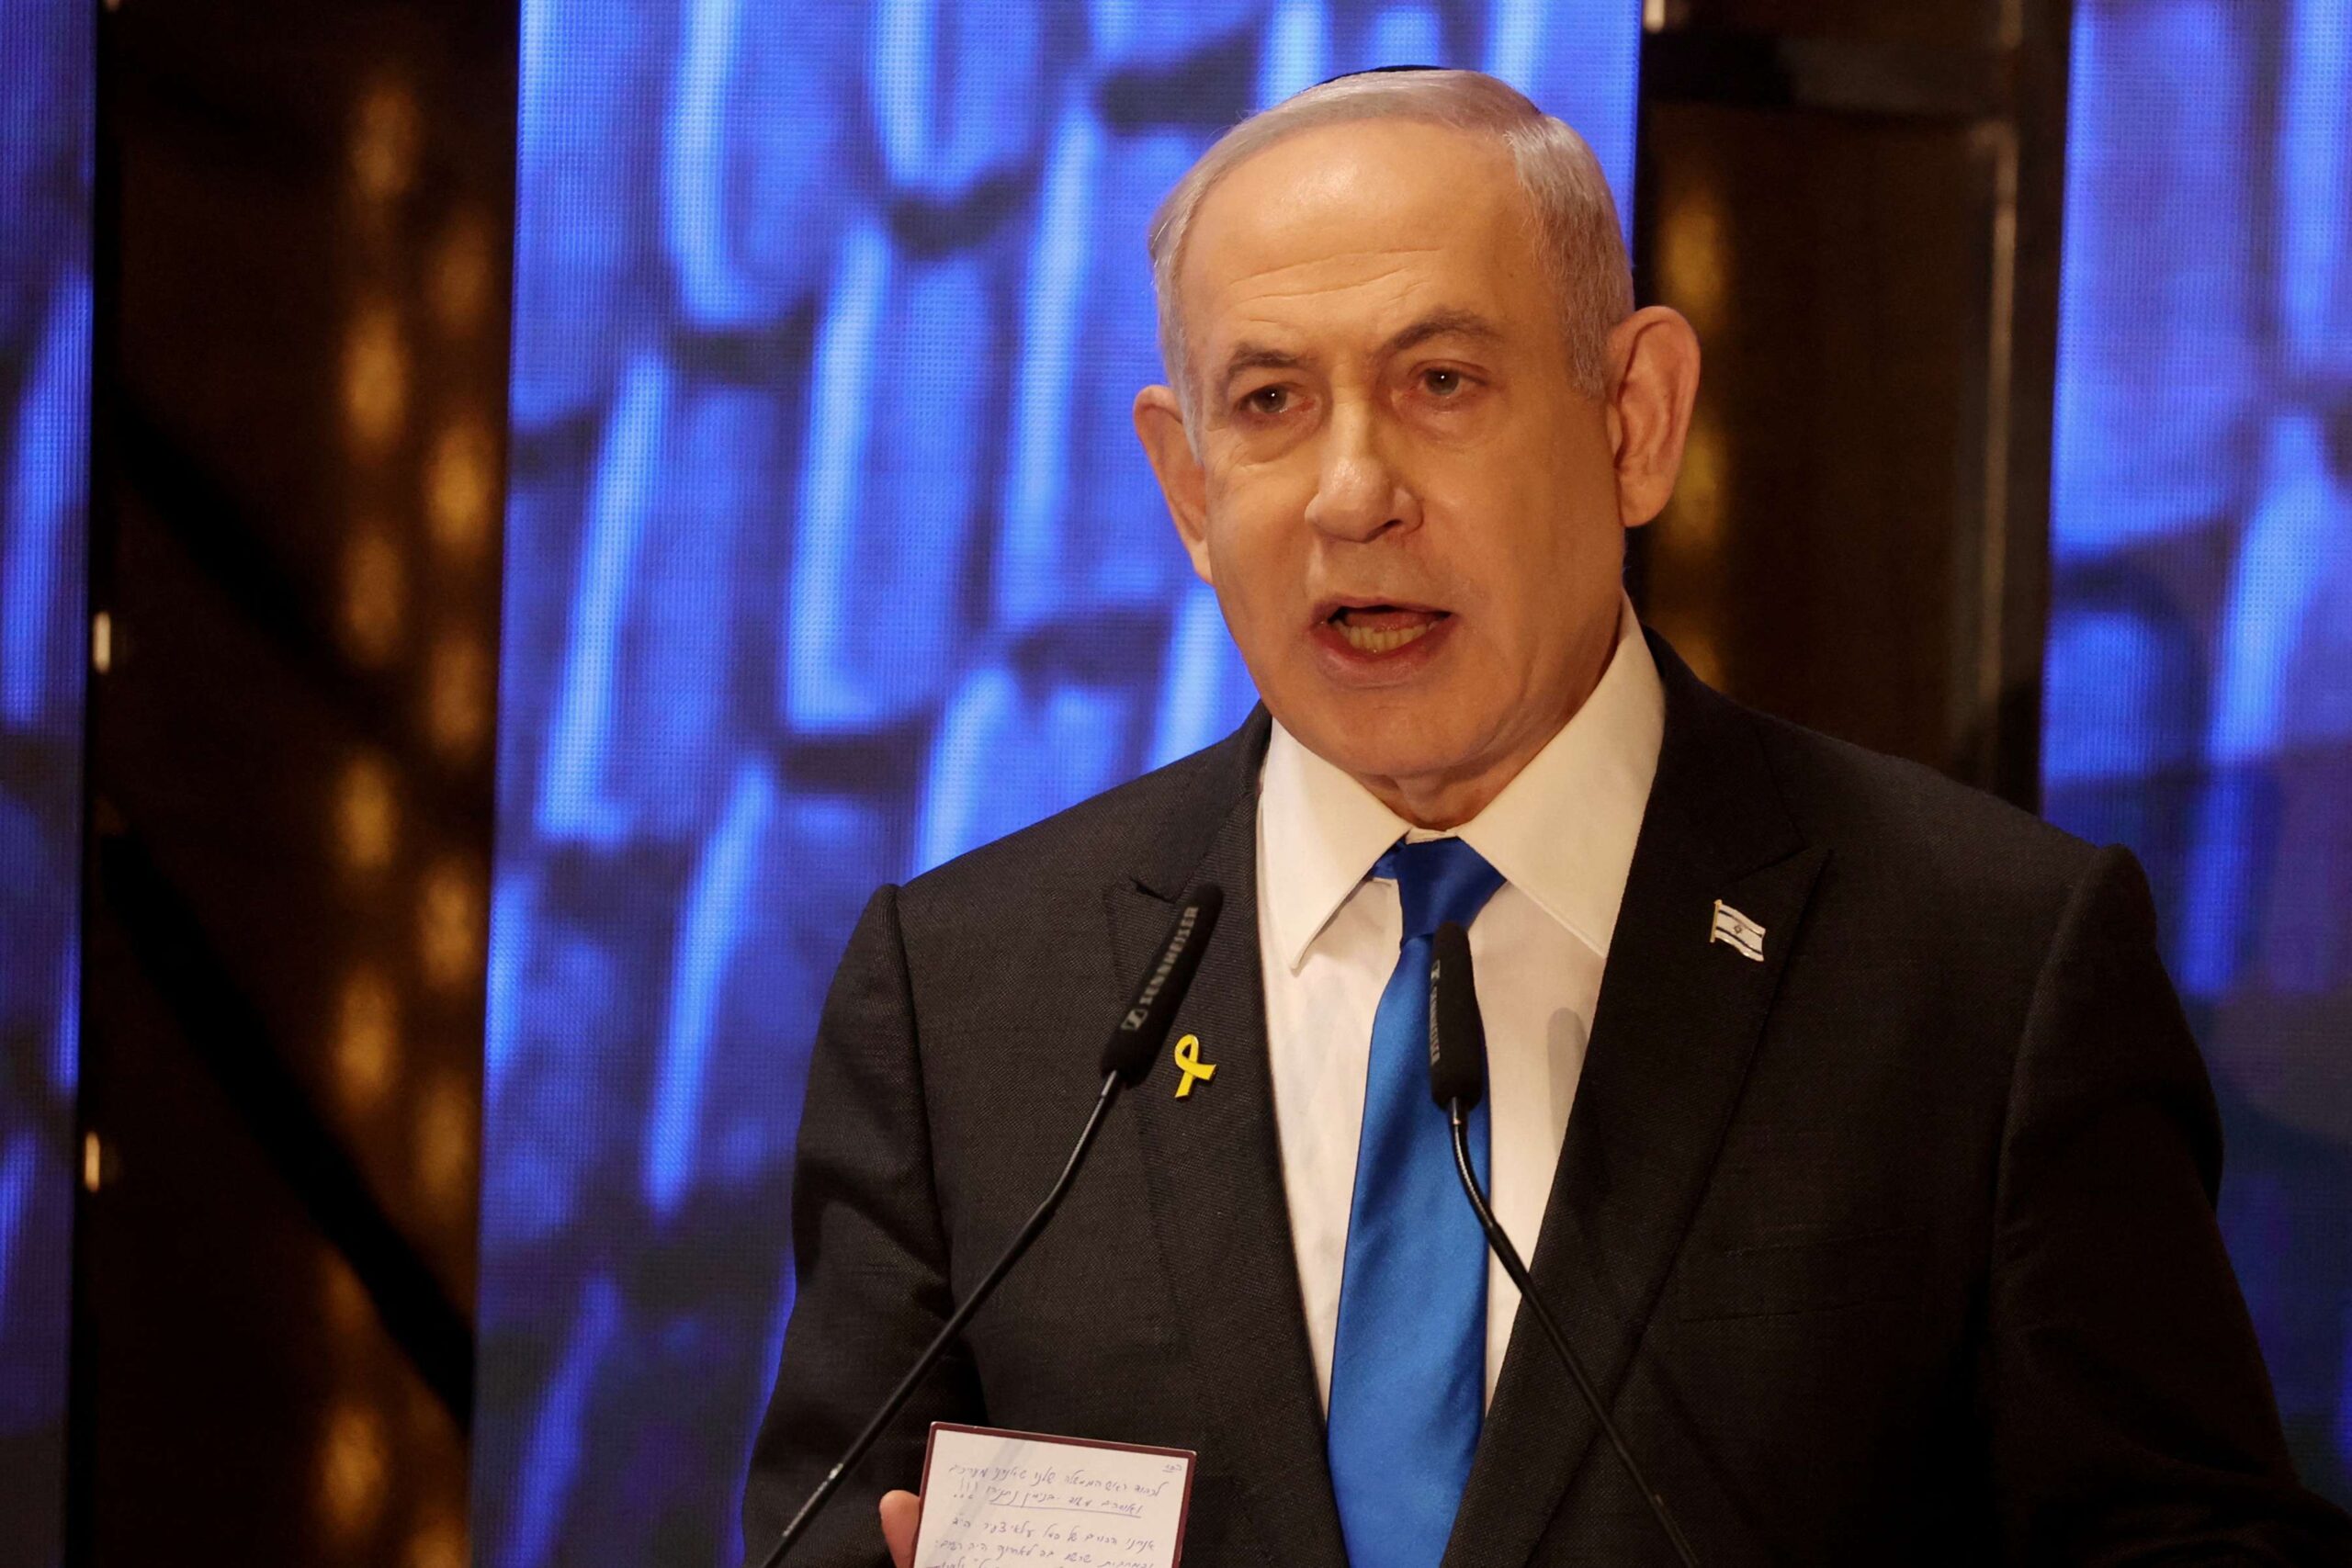 Netanyahu desfez gabinete de guerra, apesar de pressões internacionais, diz fonte